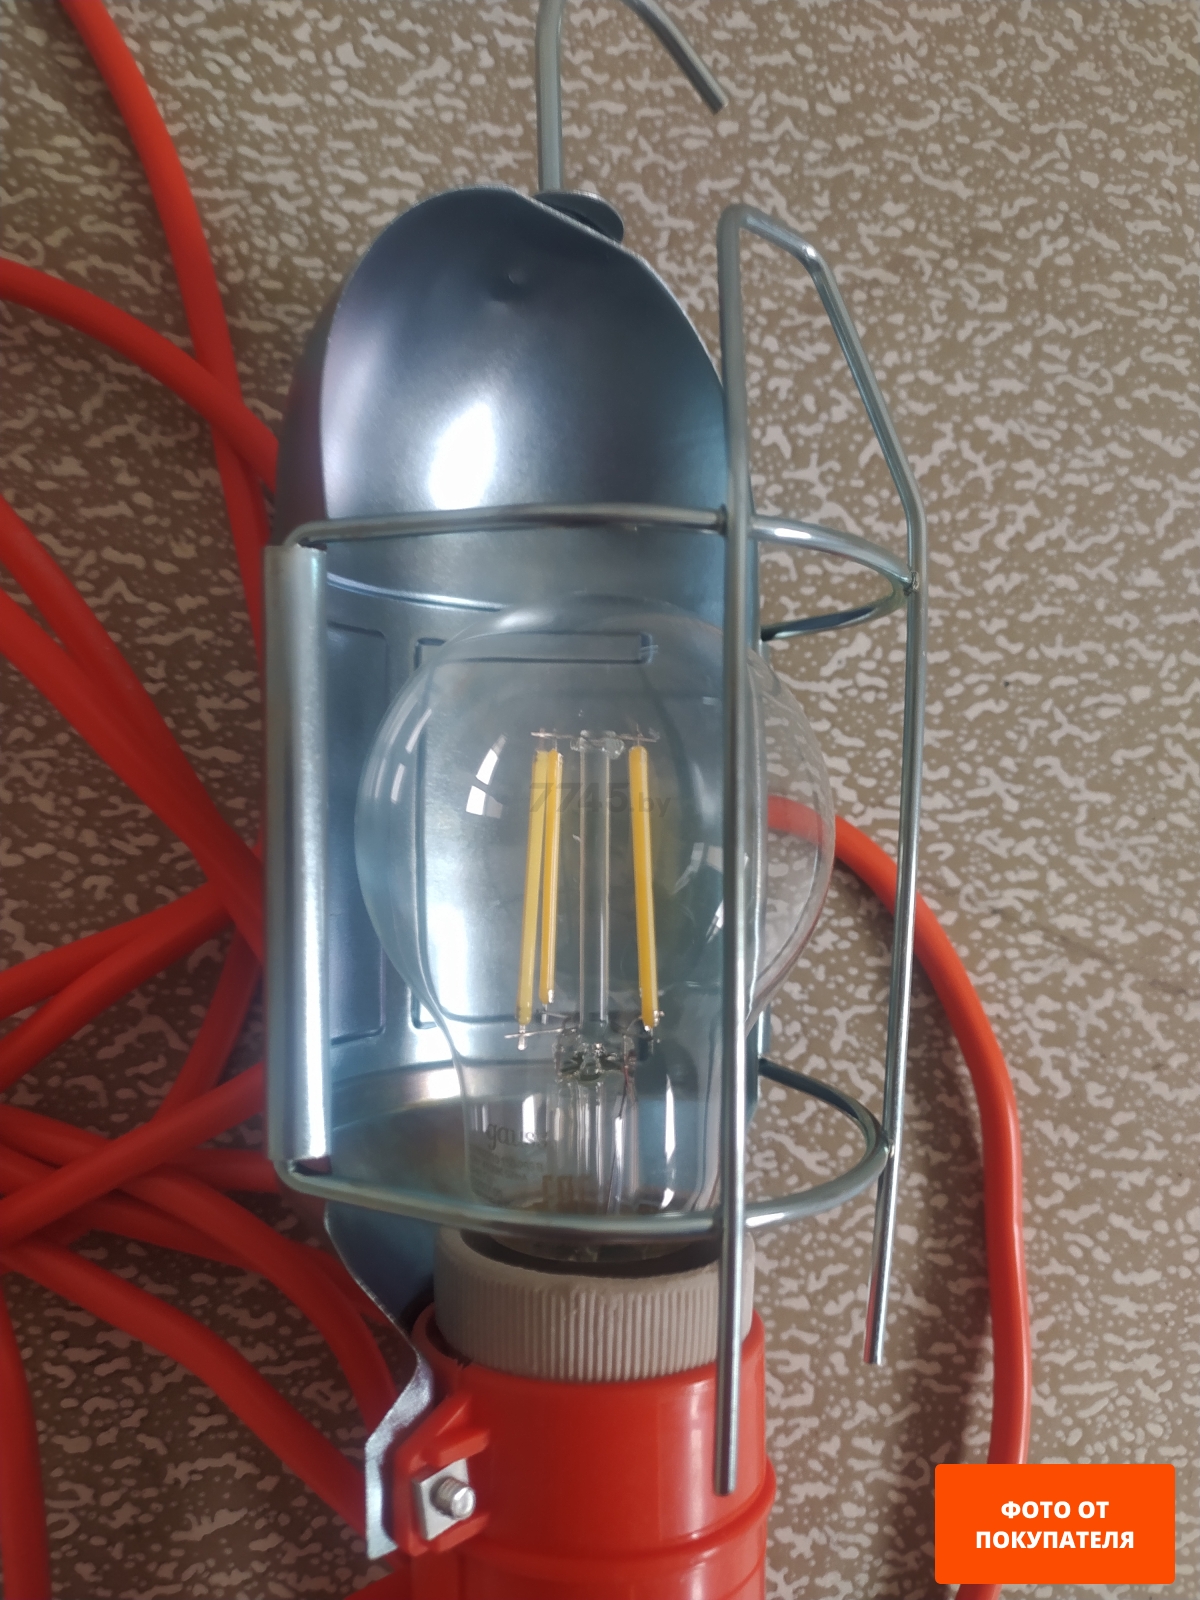 Лампа светодиодная филаментная Е27 Gauss Black Filament А60 10 Вт 4100K (102802210)